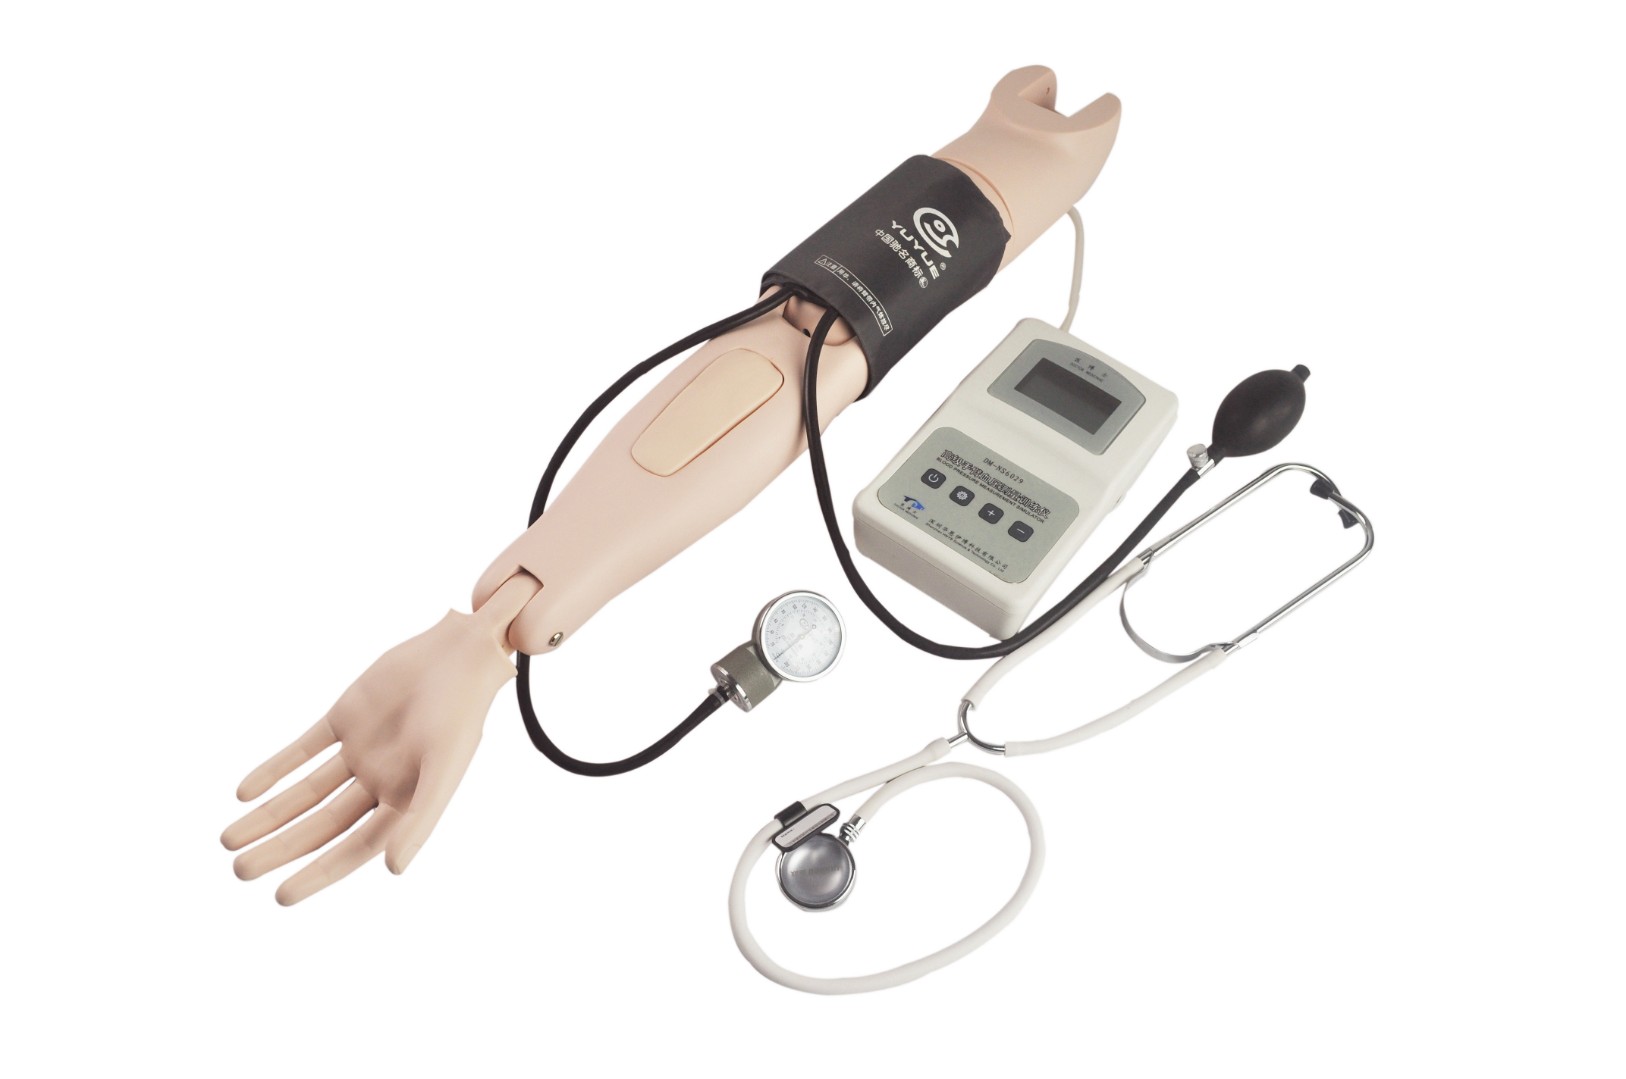 DM-NS6029 Фантом руки для измерения артериального давления